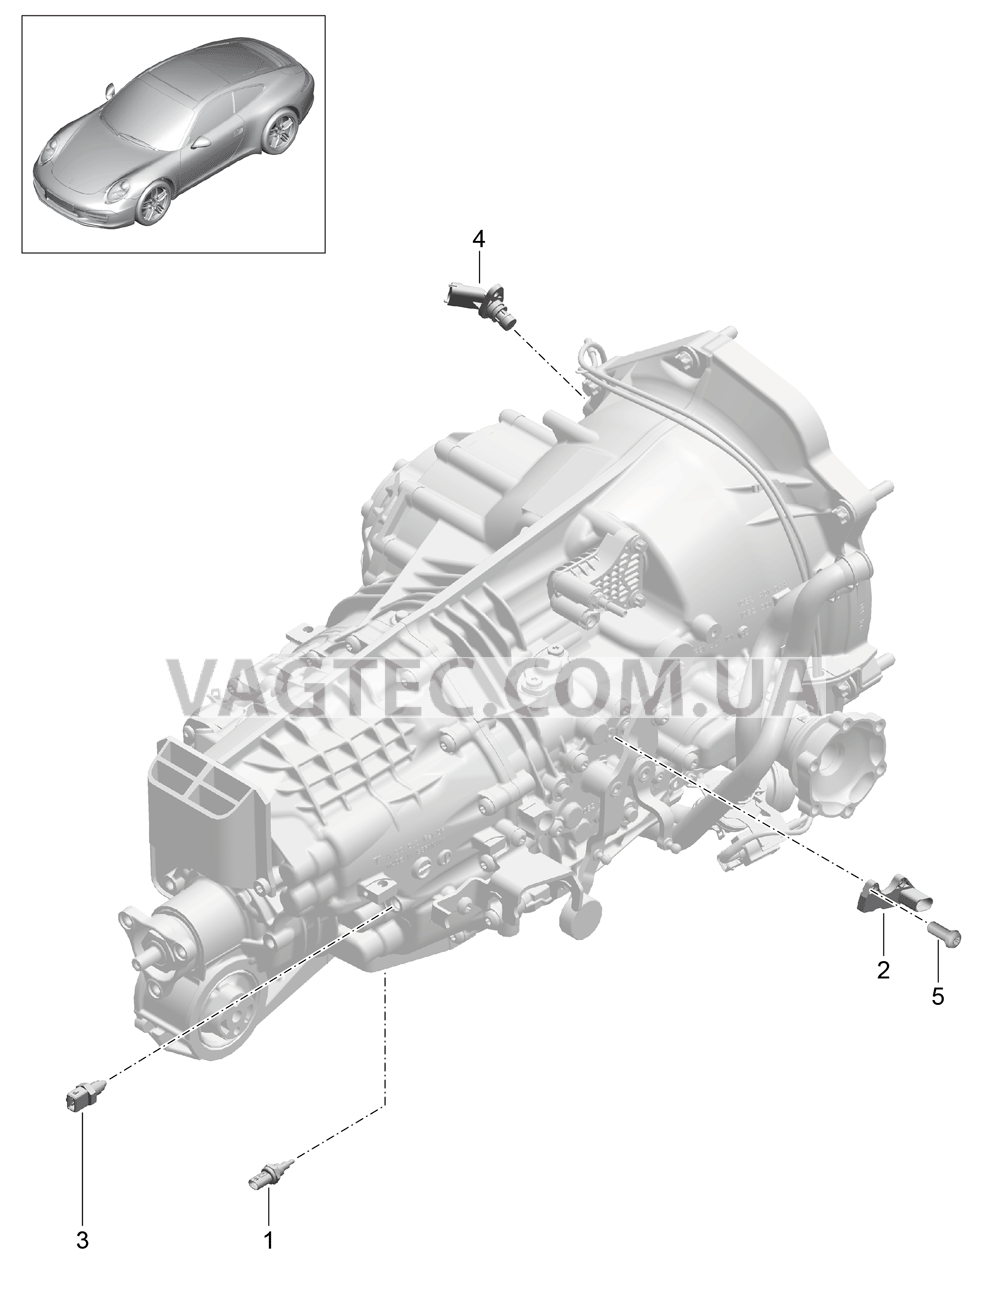 302-004 Мкпп, Отдельные детали
						
						G91.00/30 для PORSCHE 911.Carrera 2012-2016